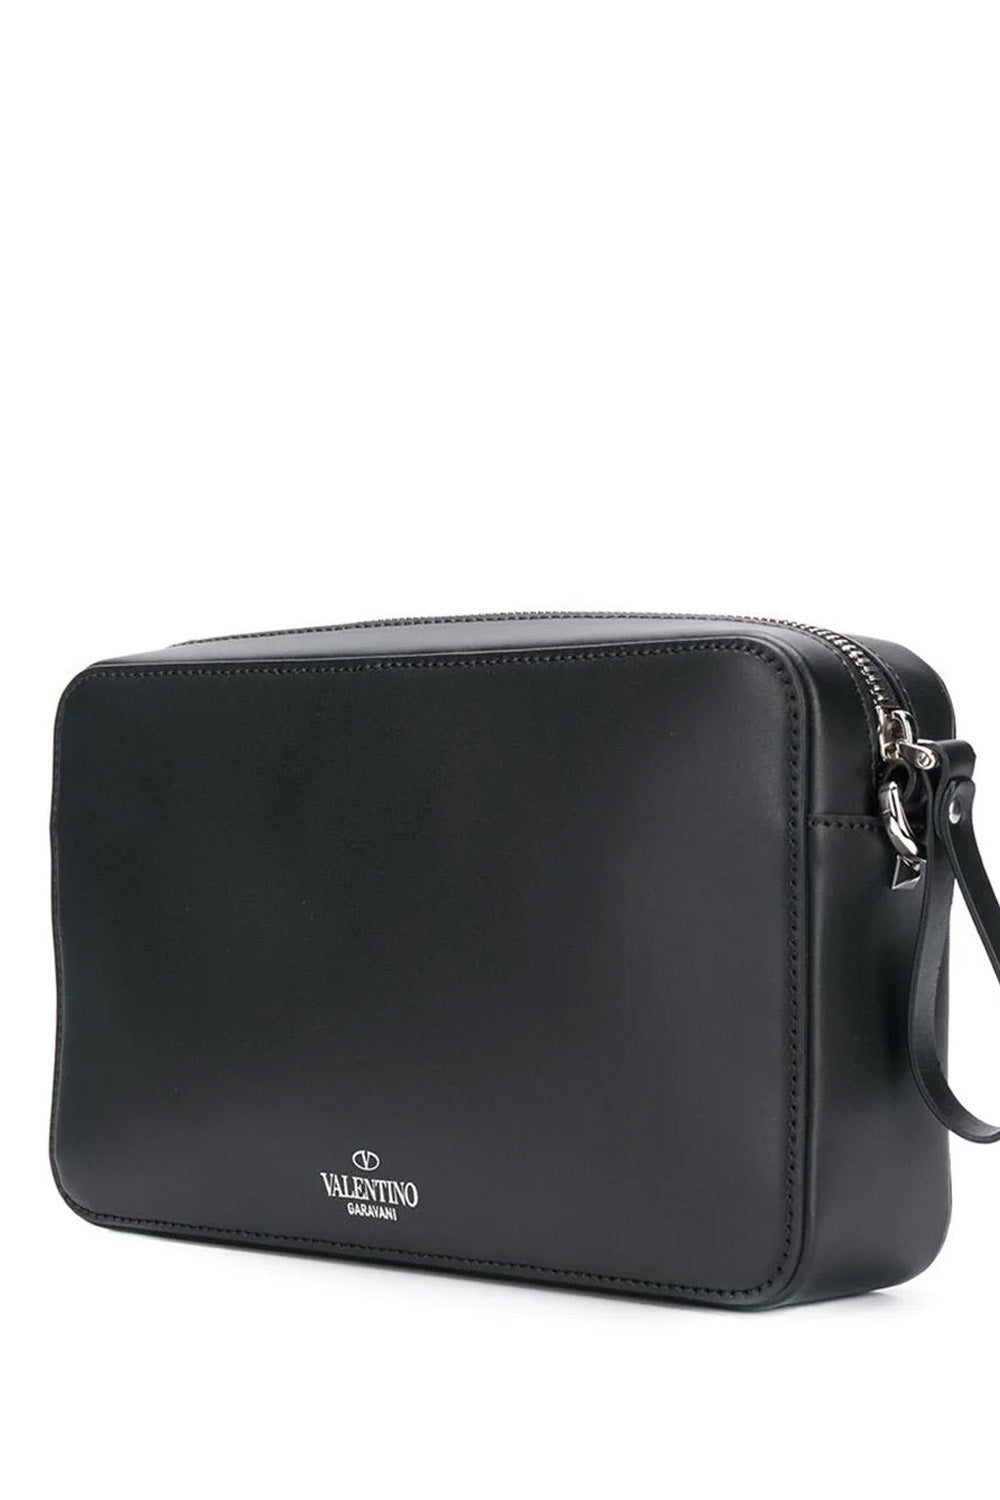 Valentino VLTN leather shoulder bag